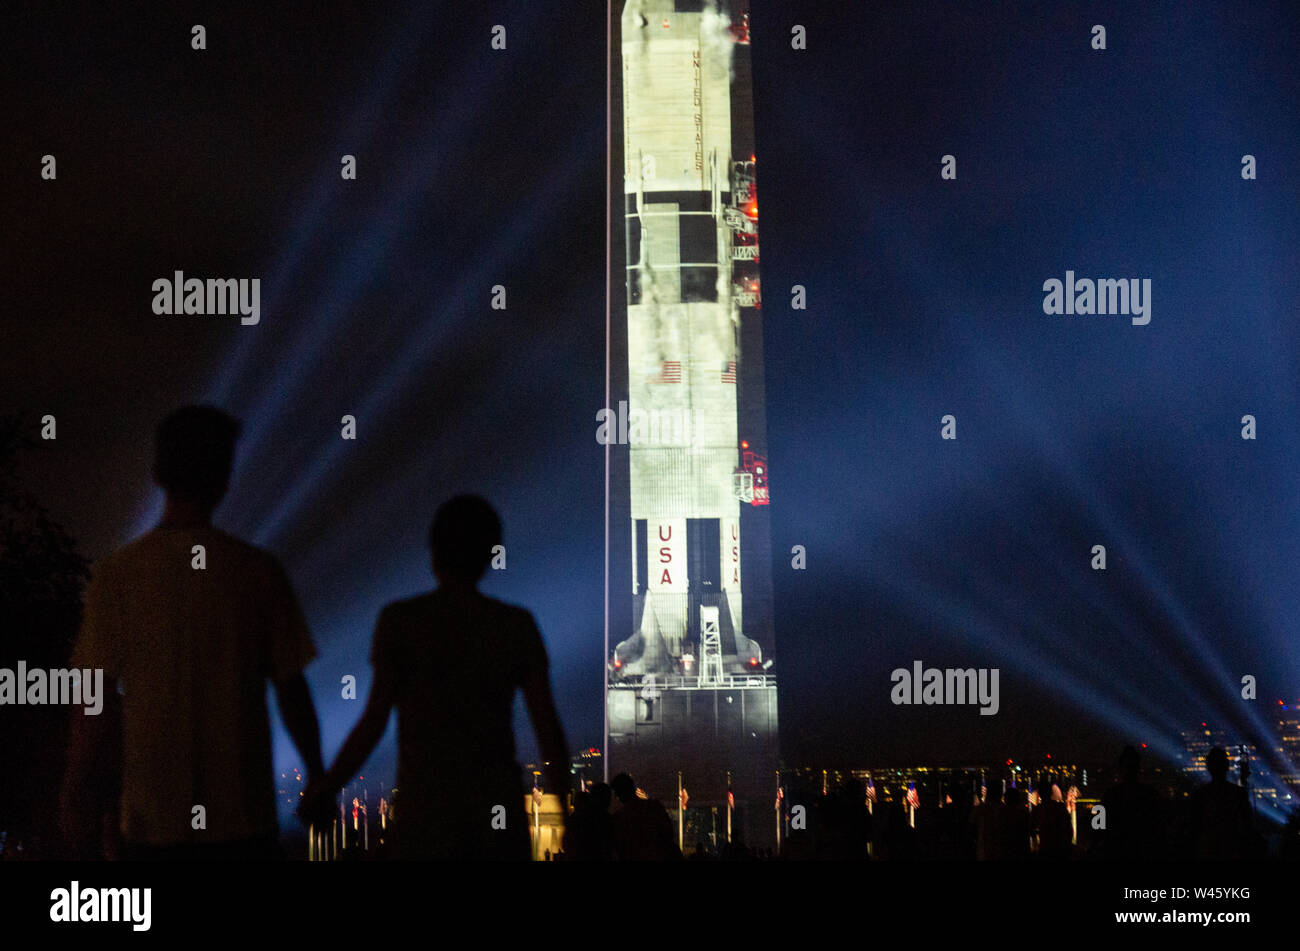 Washington DC, USA. Juli 2019 19. Menschenmengen sammeln für die Saturn V Launch Video auf die Ostwand des Washington Monument projiziert. Die Projektion und Light Show wurden durch das National Air und Space Museum zu Ehren des 50. Jahrestags der Mondlandung von Apollo 11 in Betrieb genommen. Quelle: Tim Thulson/Alamy Leben Nachrichten. Stockfoto